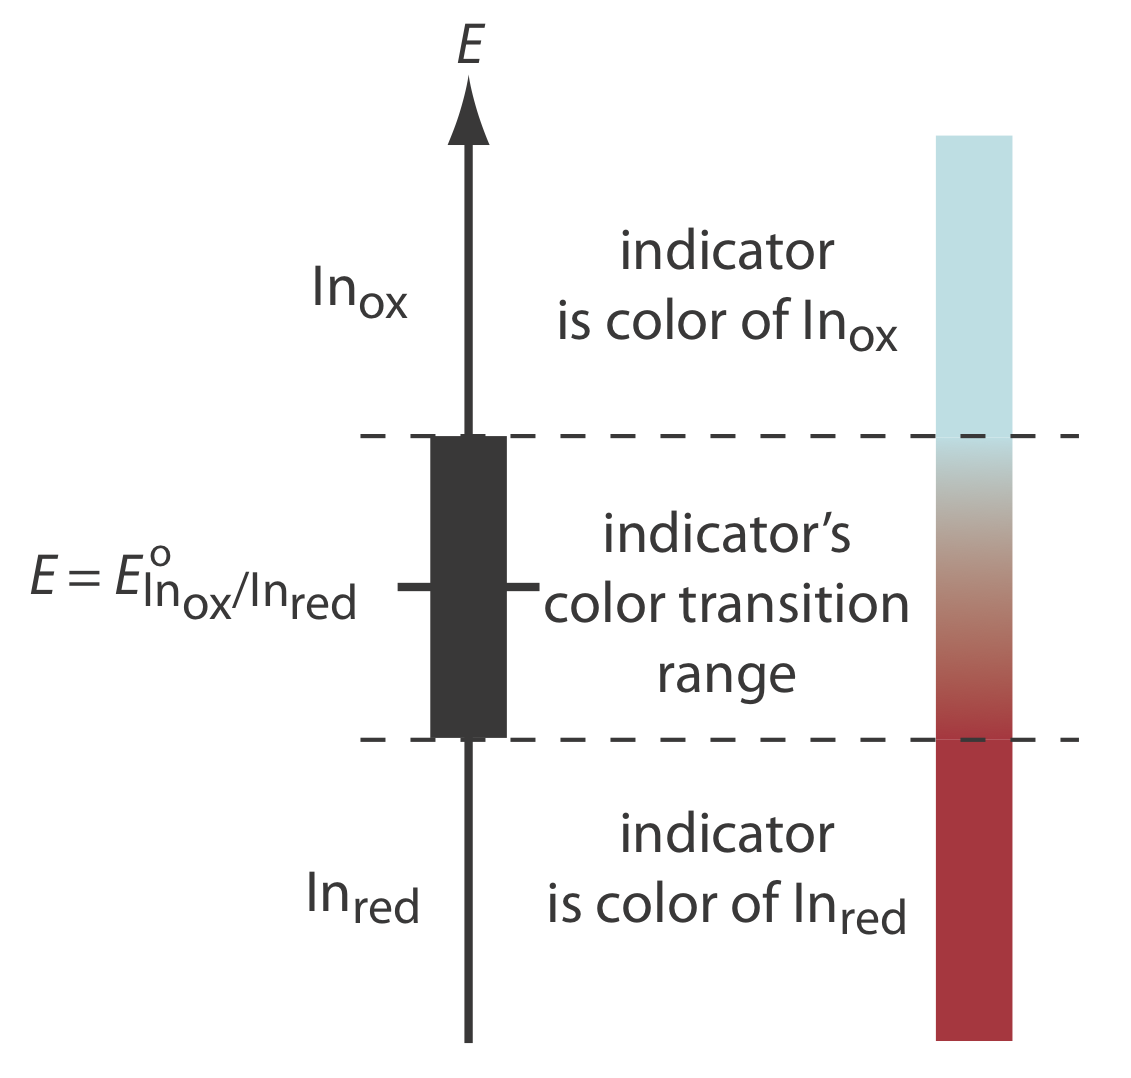 Cuando E es el logaritmo natural del reductor, el indicador es rojo. La fase de transición ocurre cuando E=E (prima) del logaritmo natural de oxidación sobre el logaritmo natural de reducción.